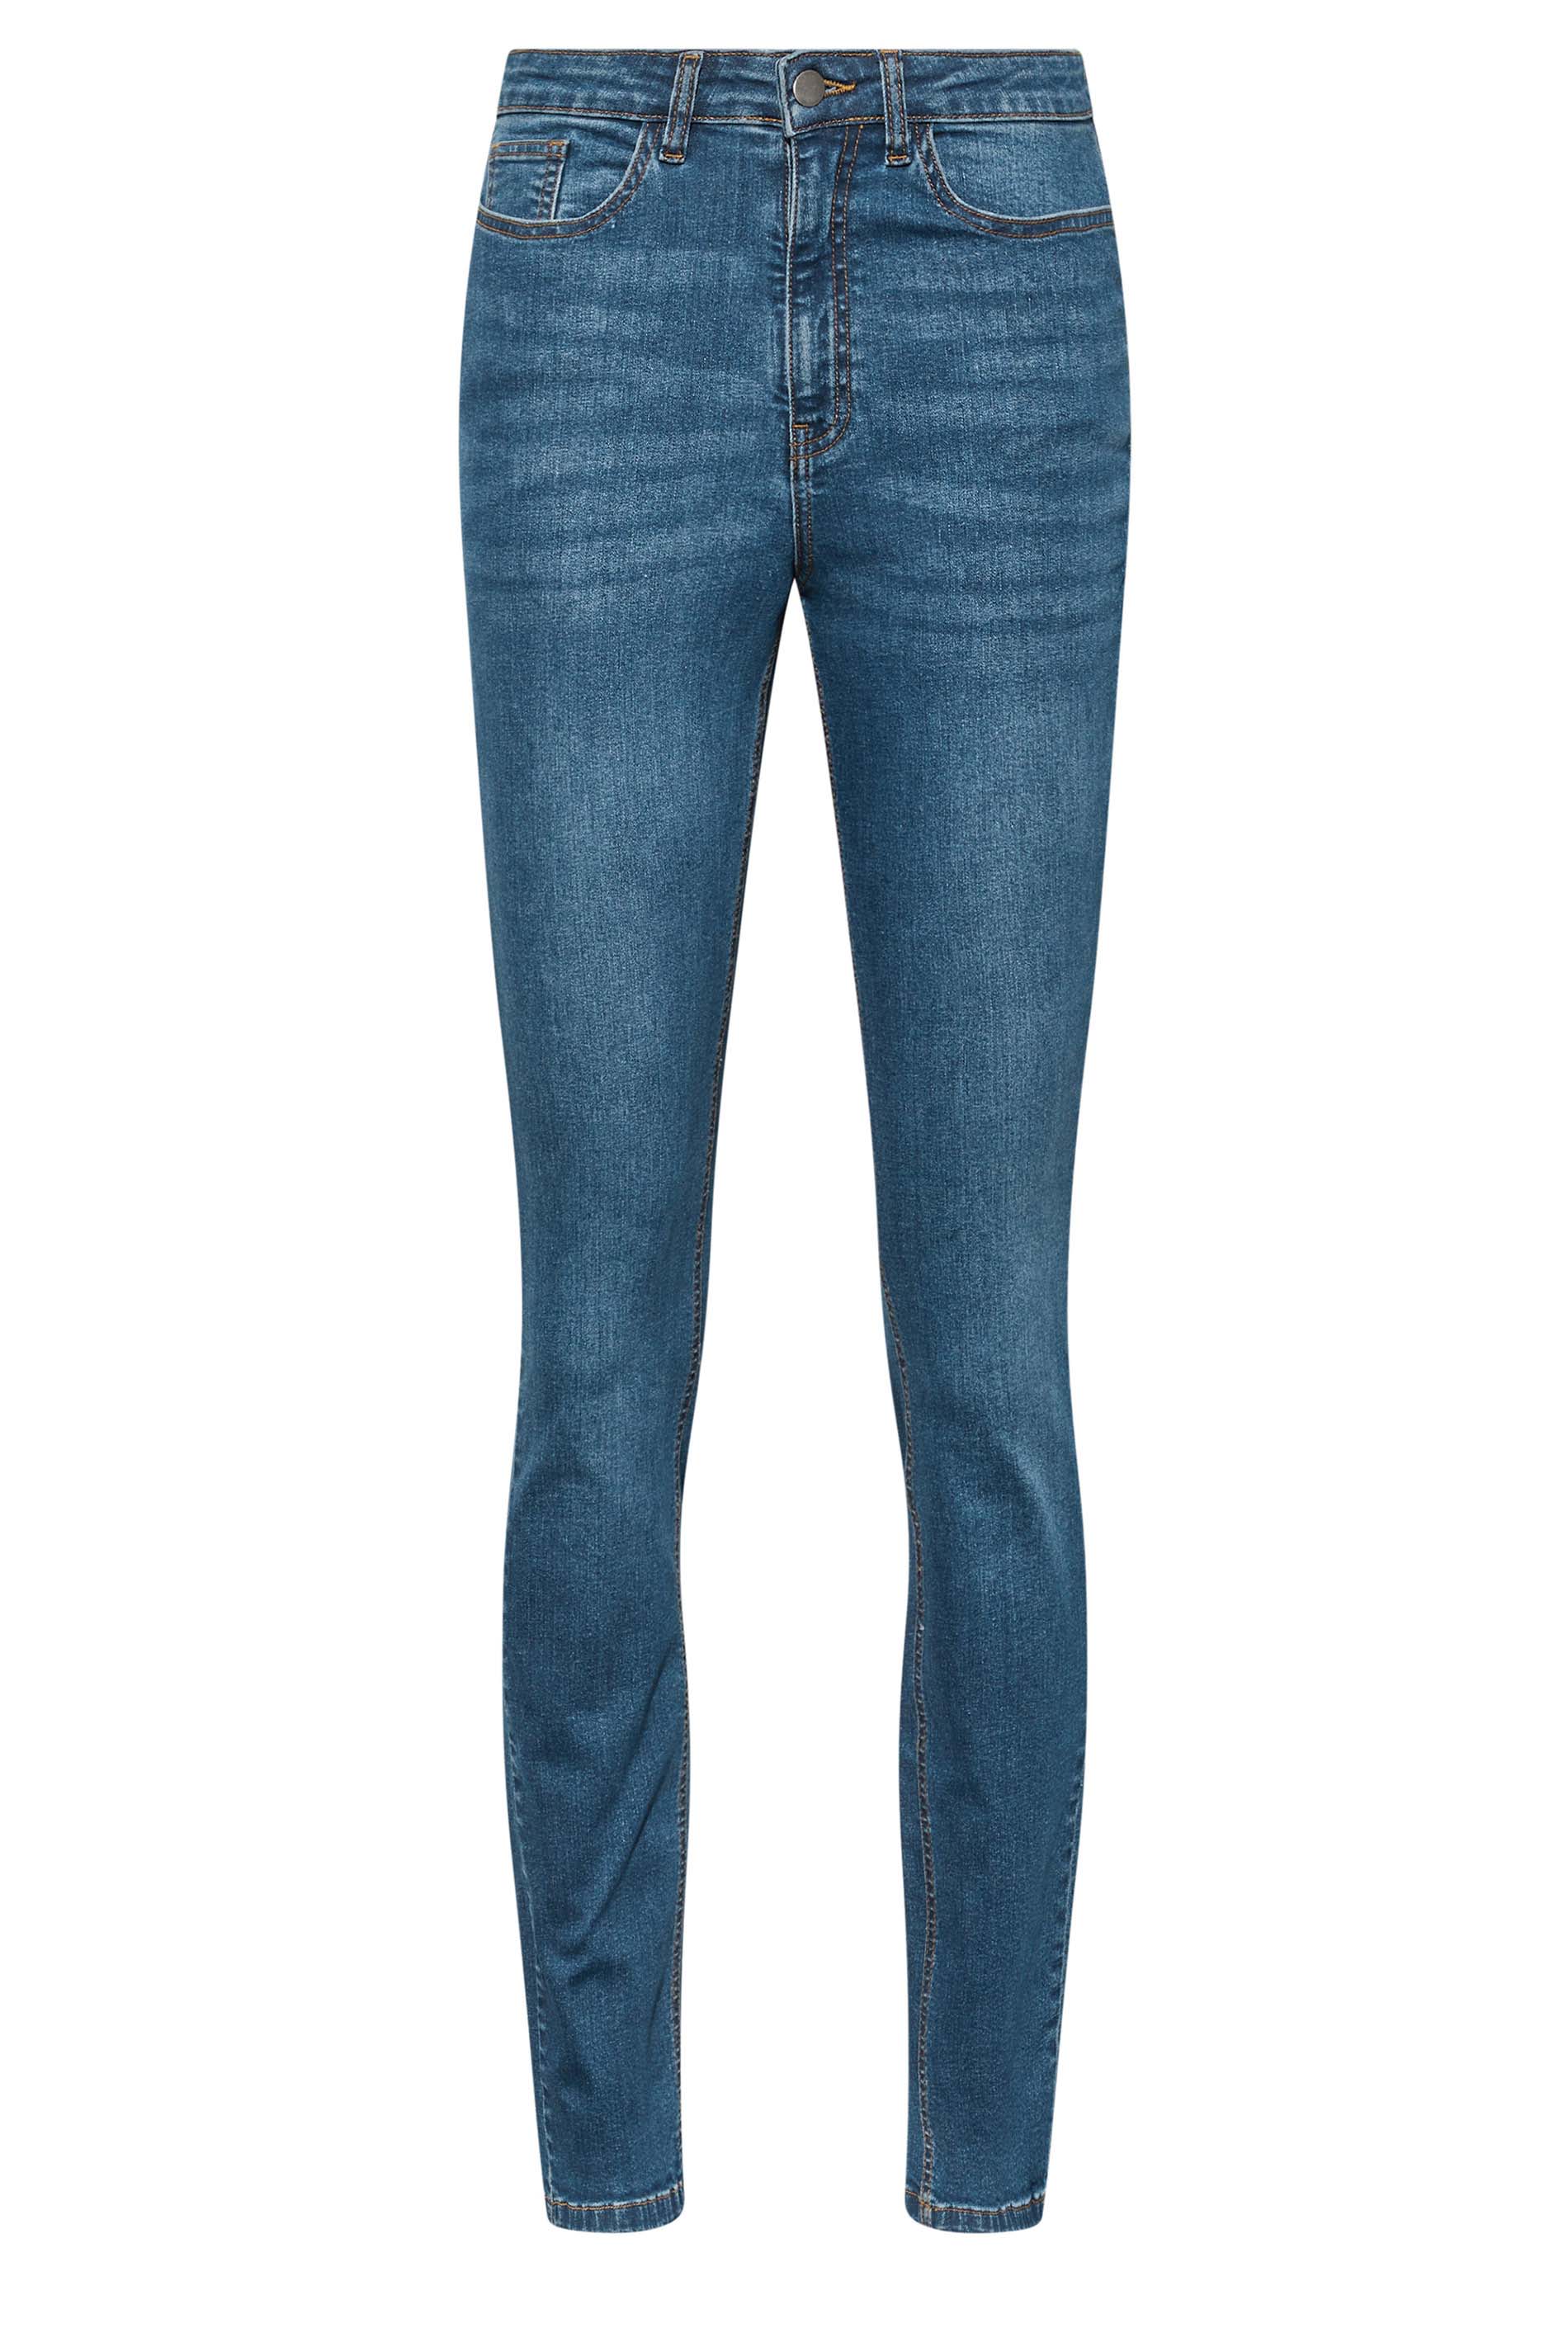 LTS Tall Women's Mid Blue MIA Slim Leg Jeans | Long Tall Sally 2